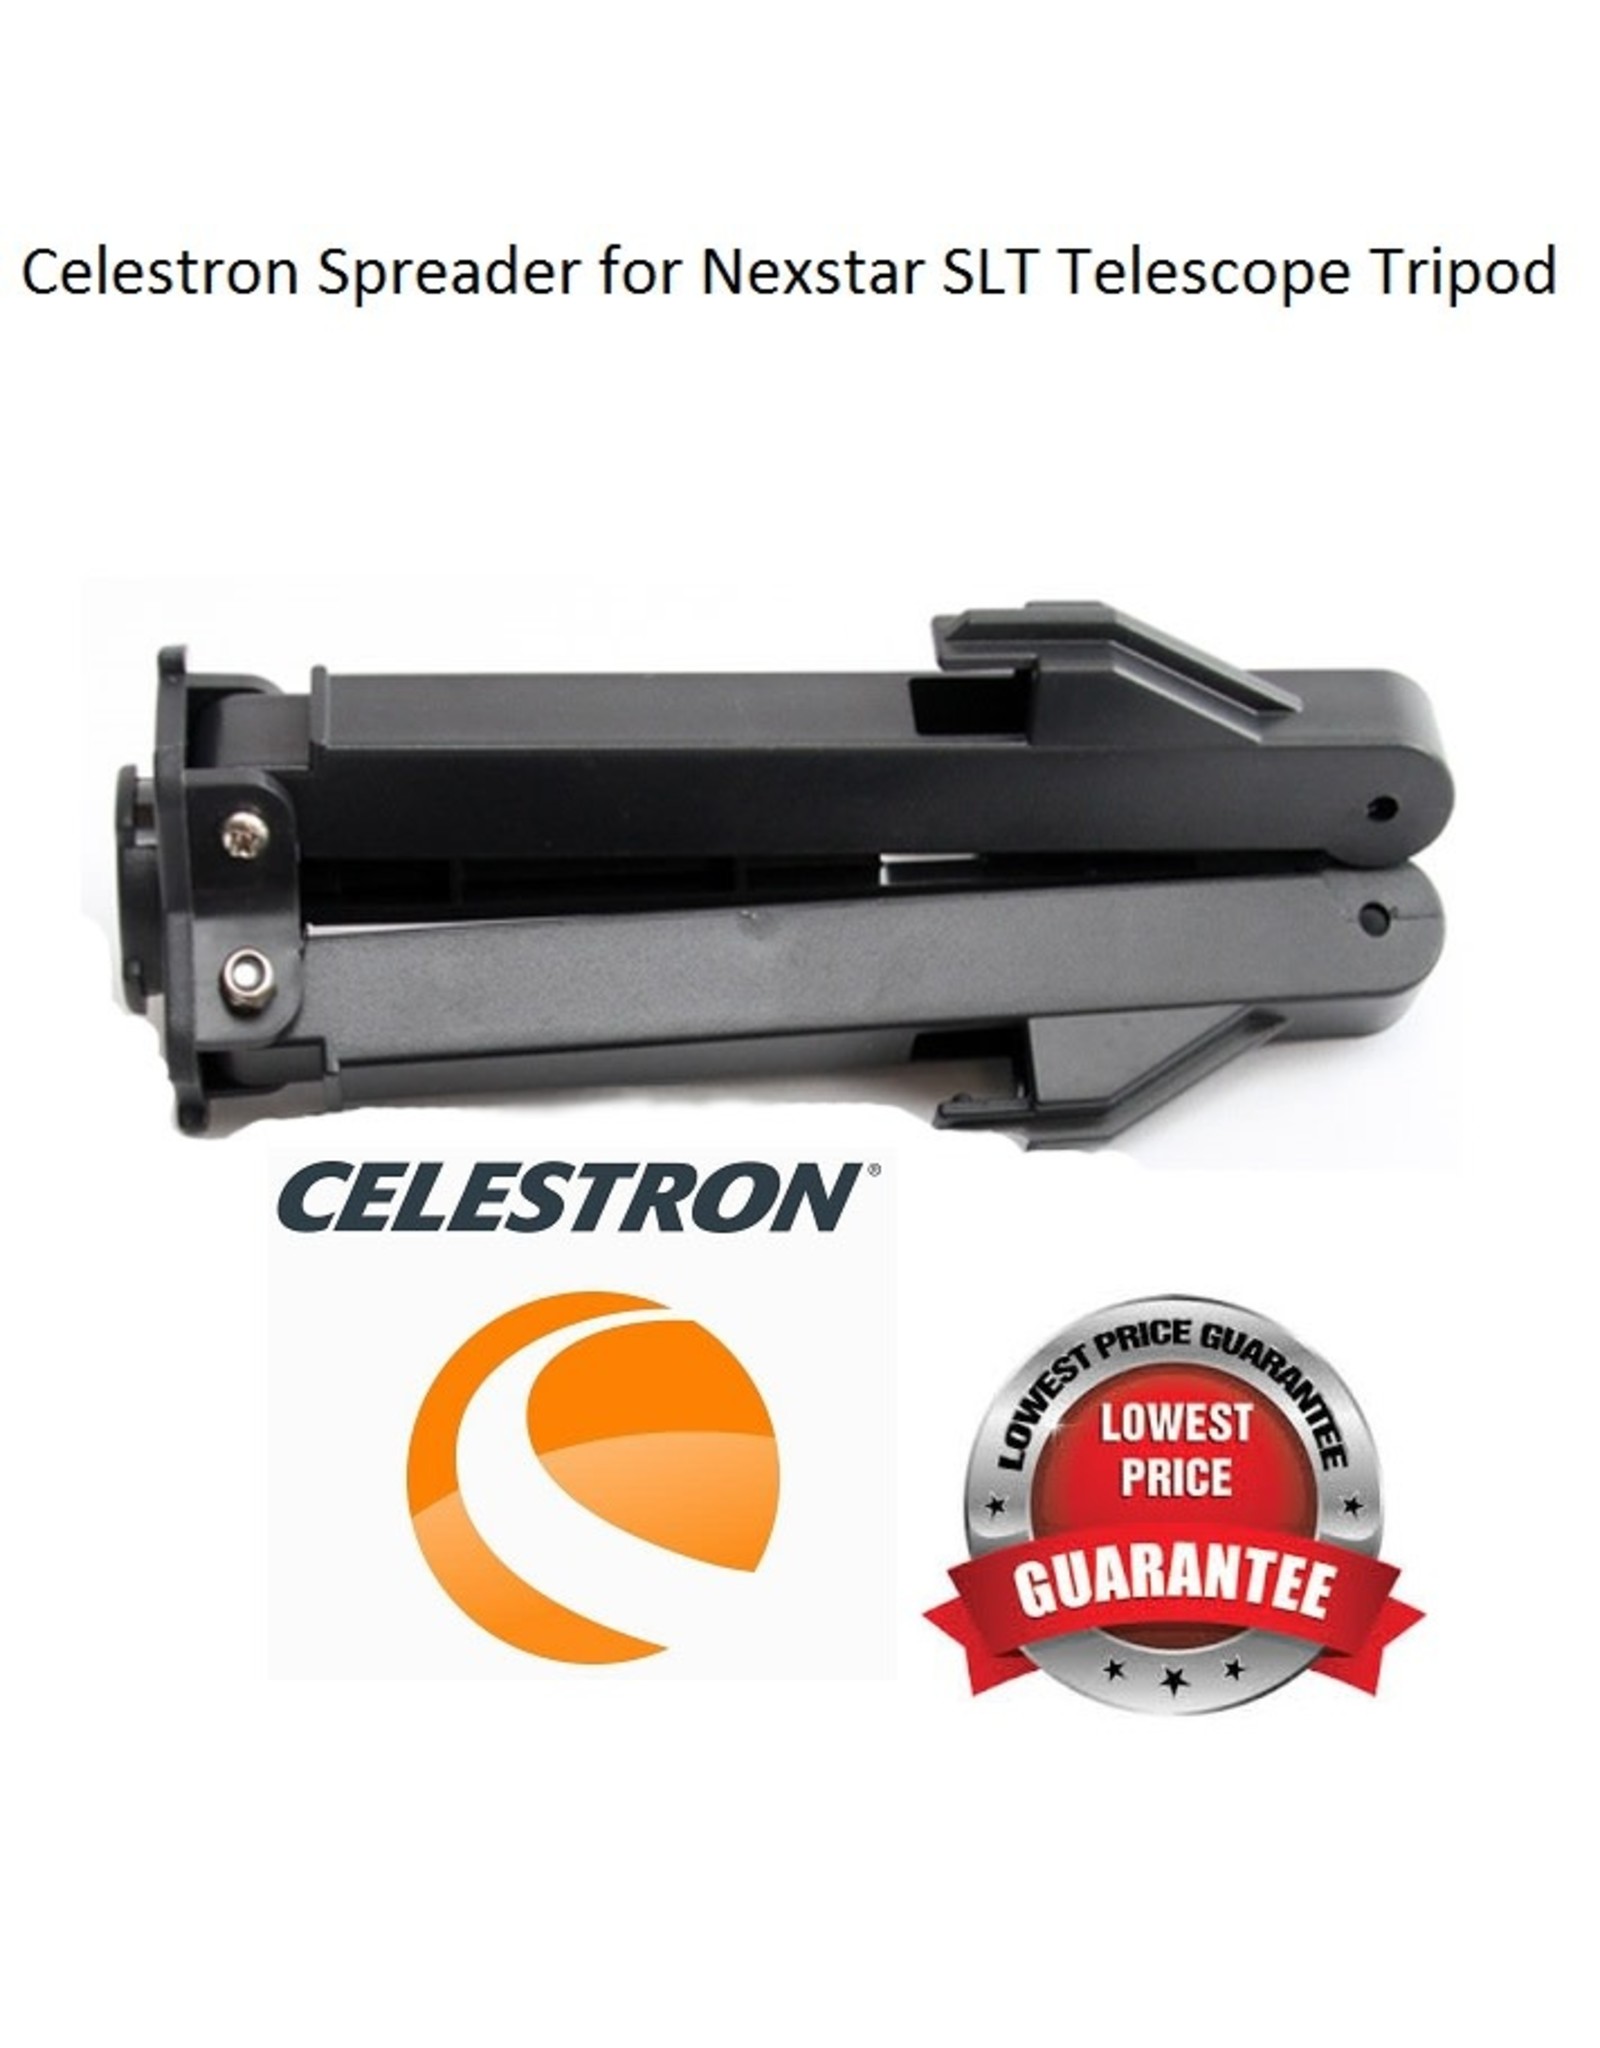 Celestron Spreader for Nexstar SLT Telescope Tripod - 51701-2